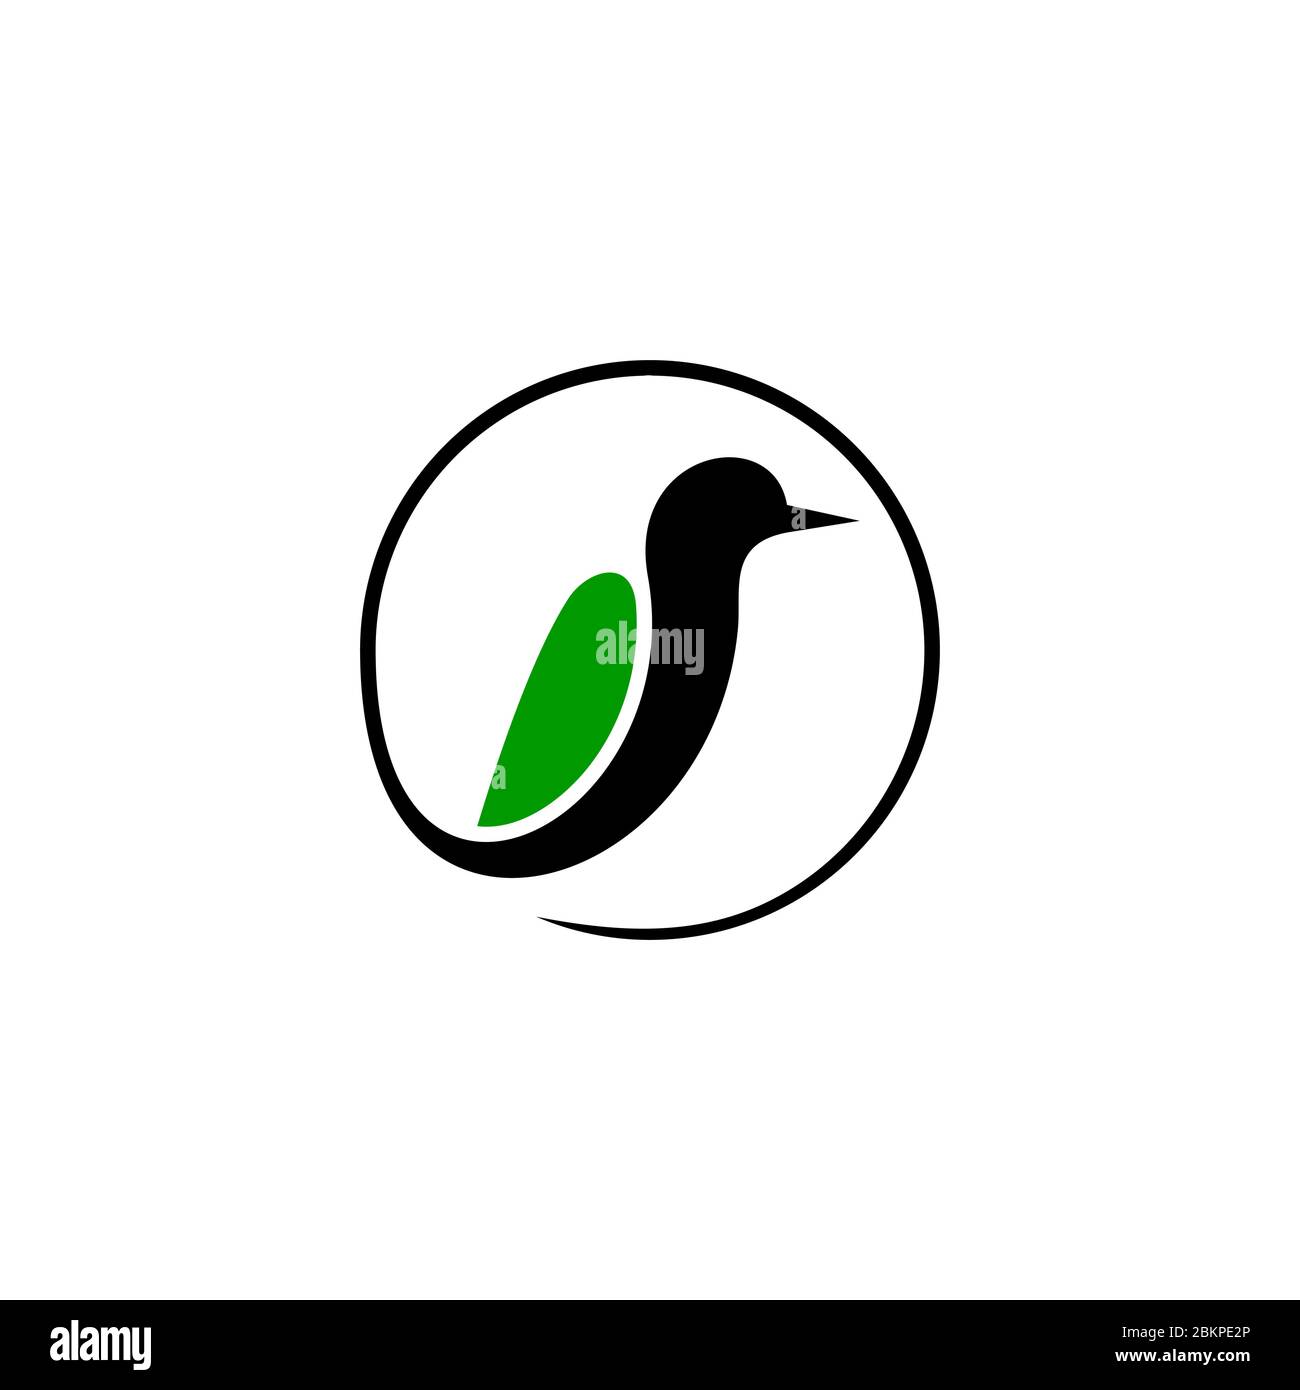 Modello creativo con logo grafico a forma di uccello, elemento di design circolare, isolato su sfondo bianco. Illustrazione Vettoriale